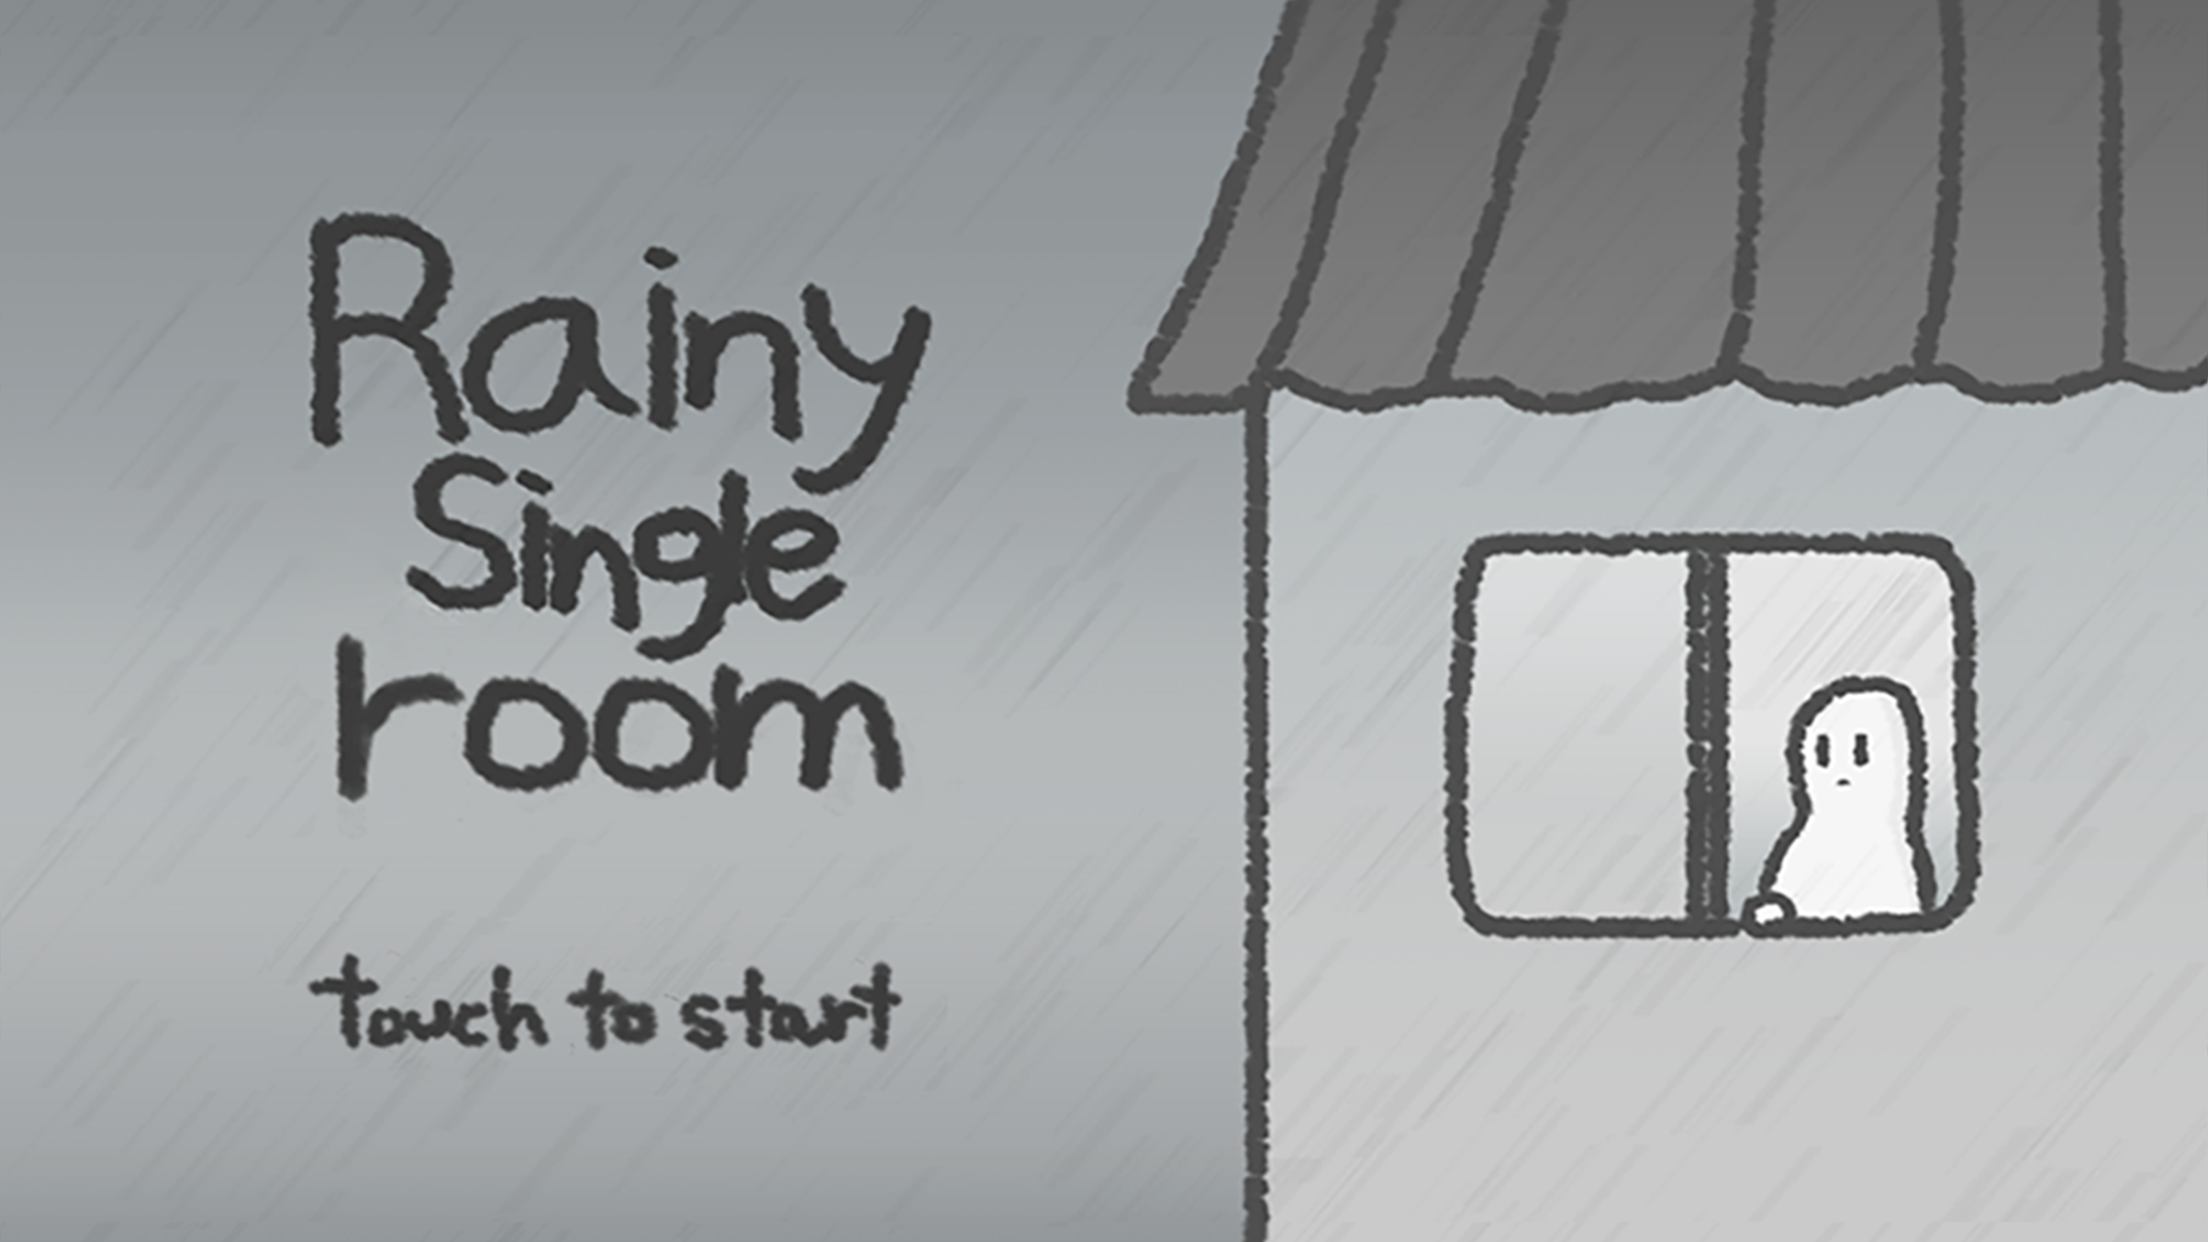 Rainy single room遊戲截圖